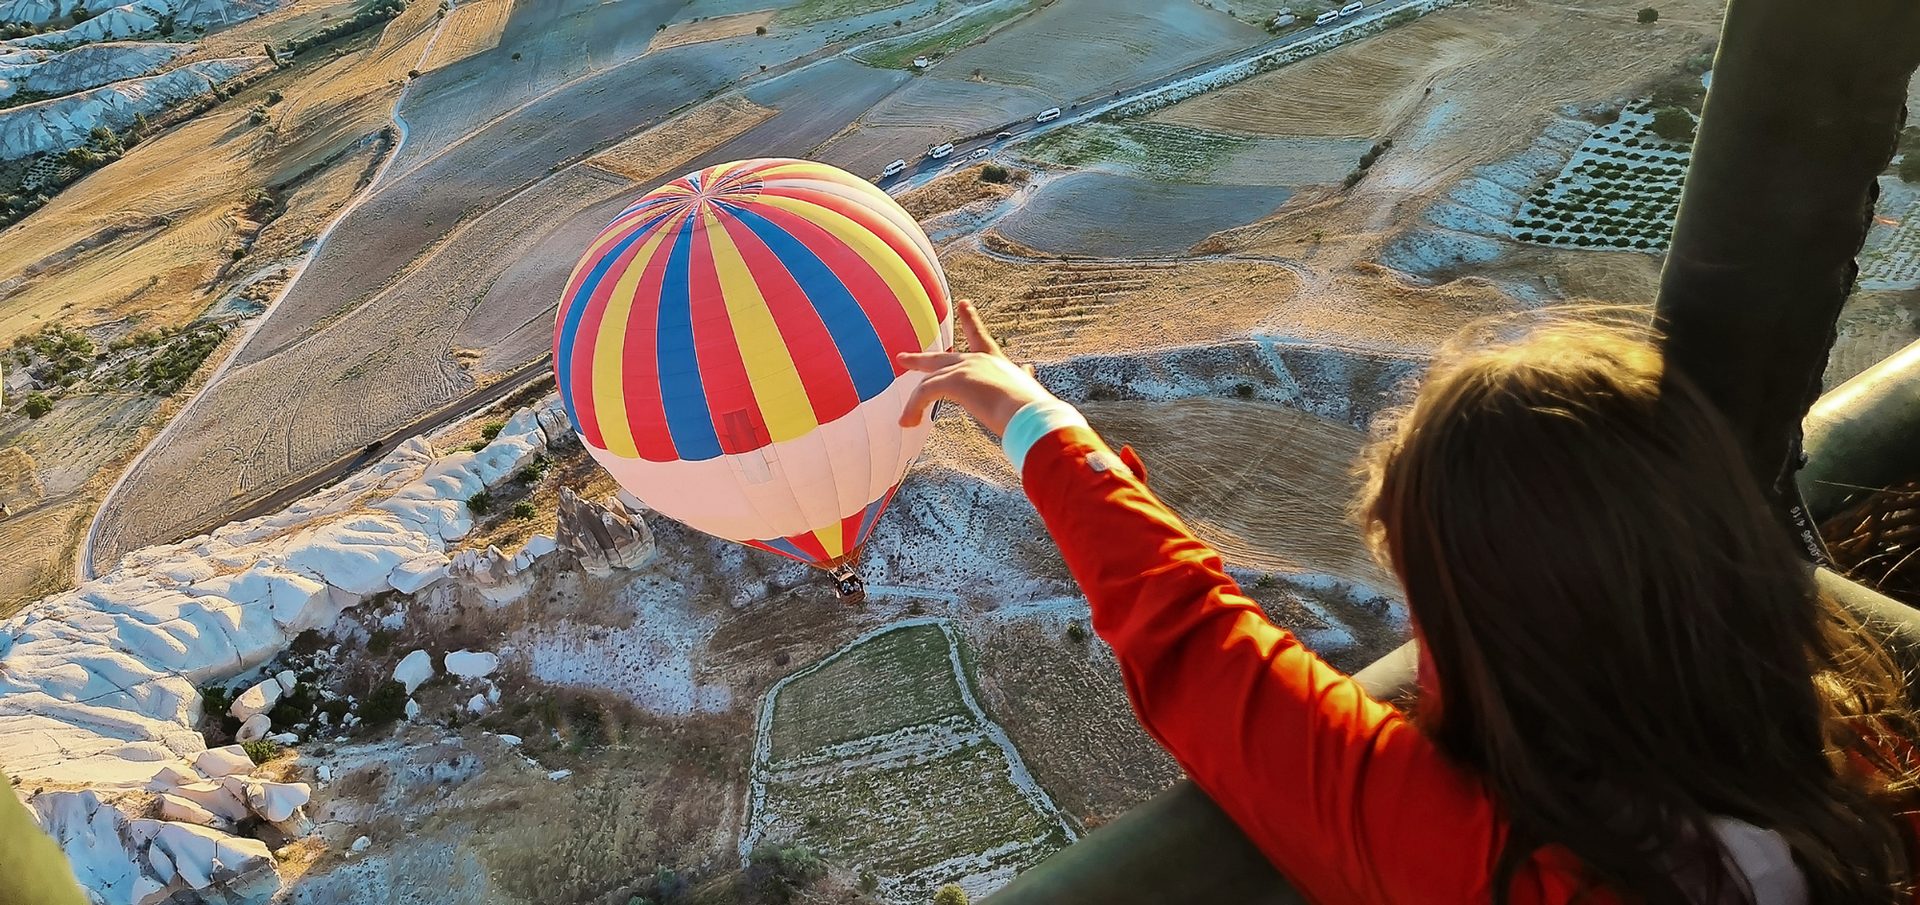 Hot air ballooning, People in nature, Aerostat, World, Balloon, Leisure